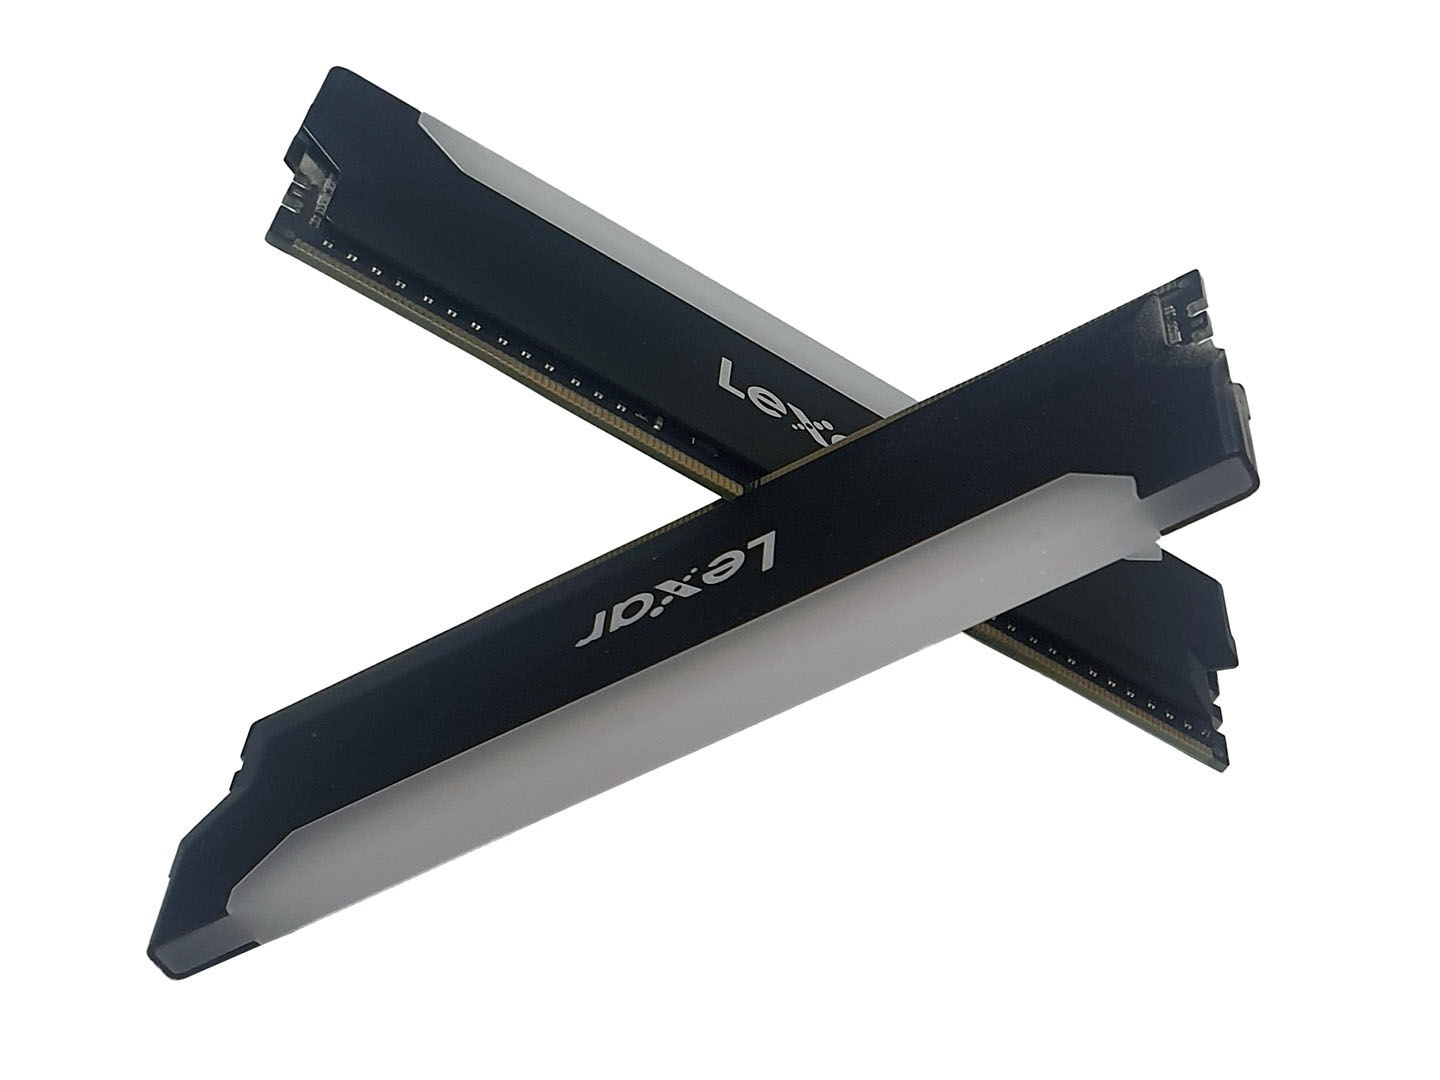 Lexar Hades RGB RAM DDR4 32Go Kit (16Go x 2) 3600 MHz, DRAM 288